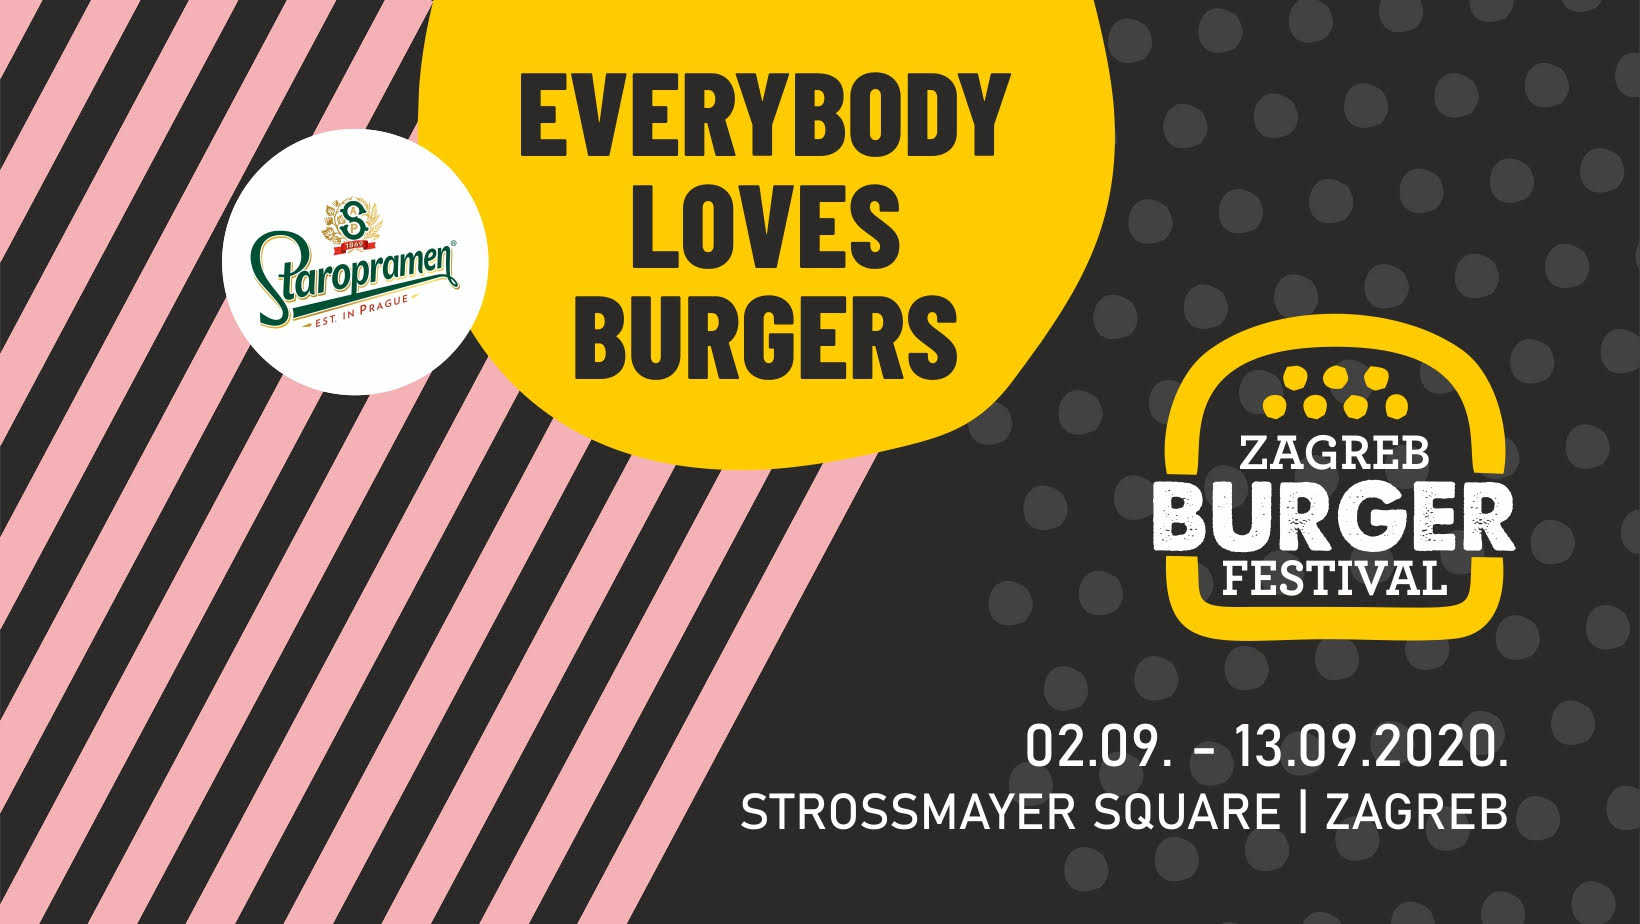 Zagreb Burger Festival od 2. do 13. rujna na Strossmayerovom trgu!